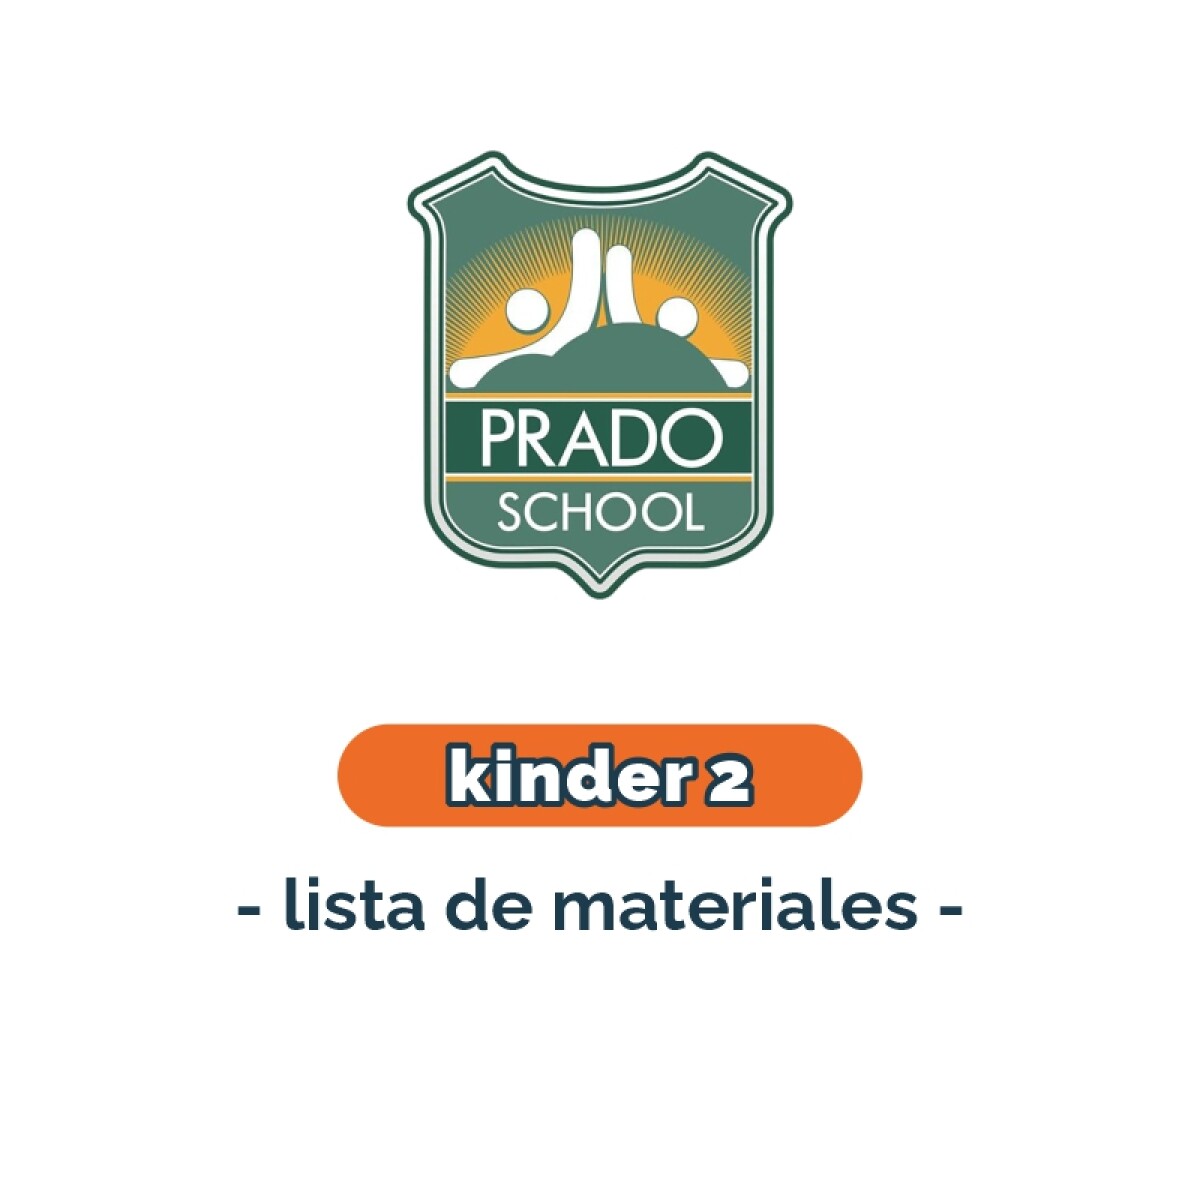 Lista de materiales - Kinder 2 Prado School 